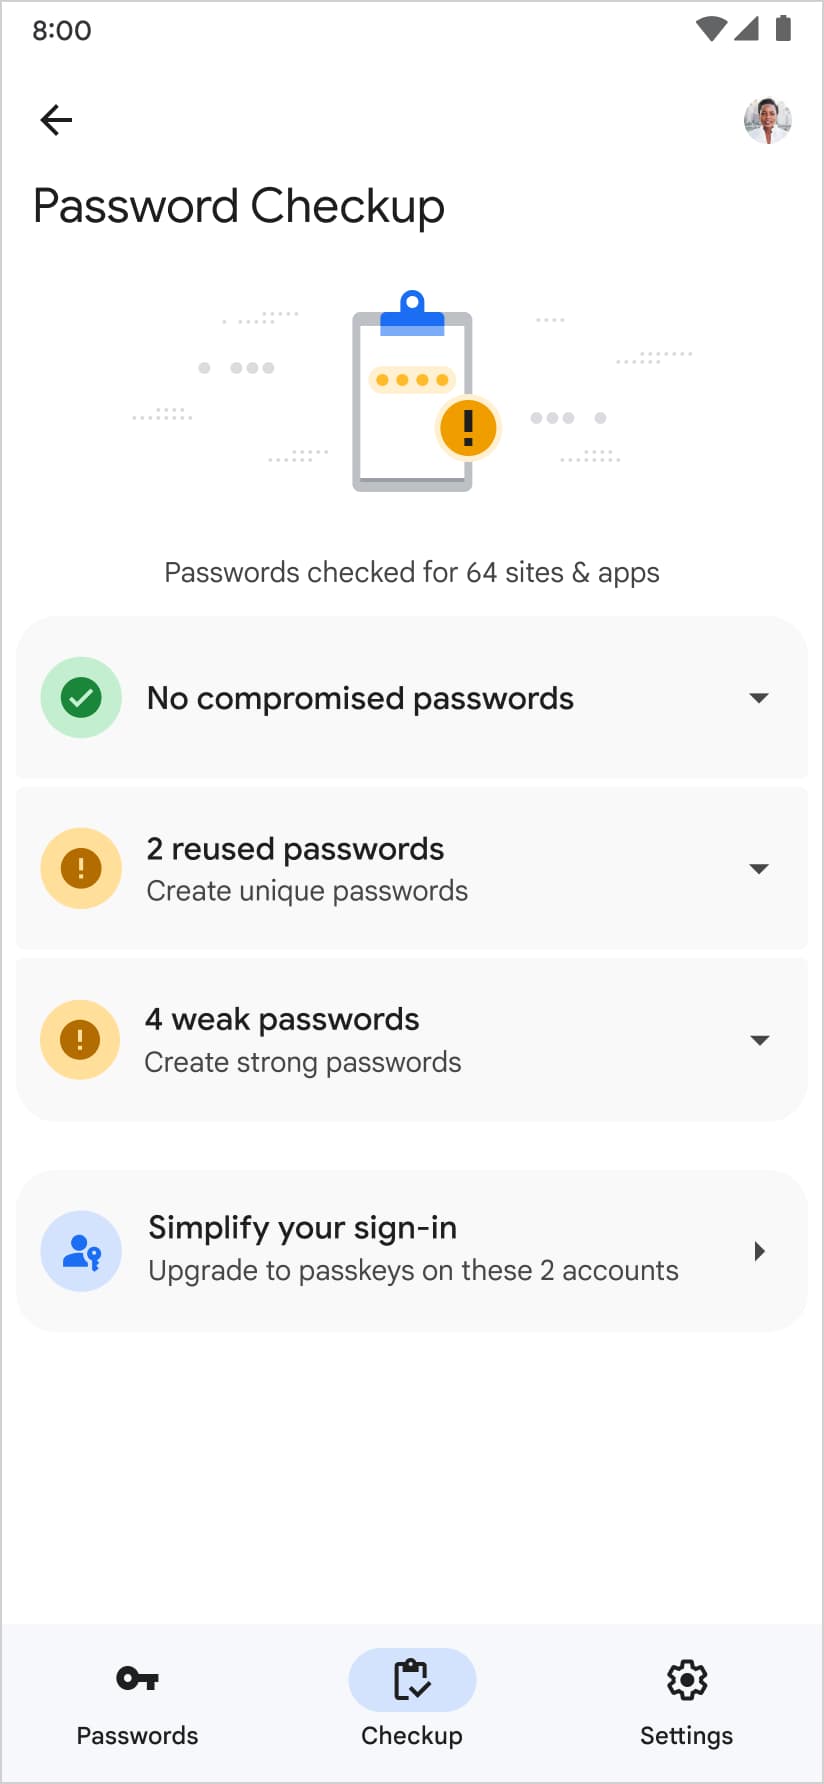 นอกจากนี้ เครื่องมือจัดการรหัสผ่านบน Google ยังแนะนำให้สร้างพาสคีย์ในหน้าการตรวจสอบรหัสผ่านด้วย